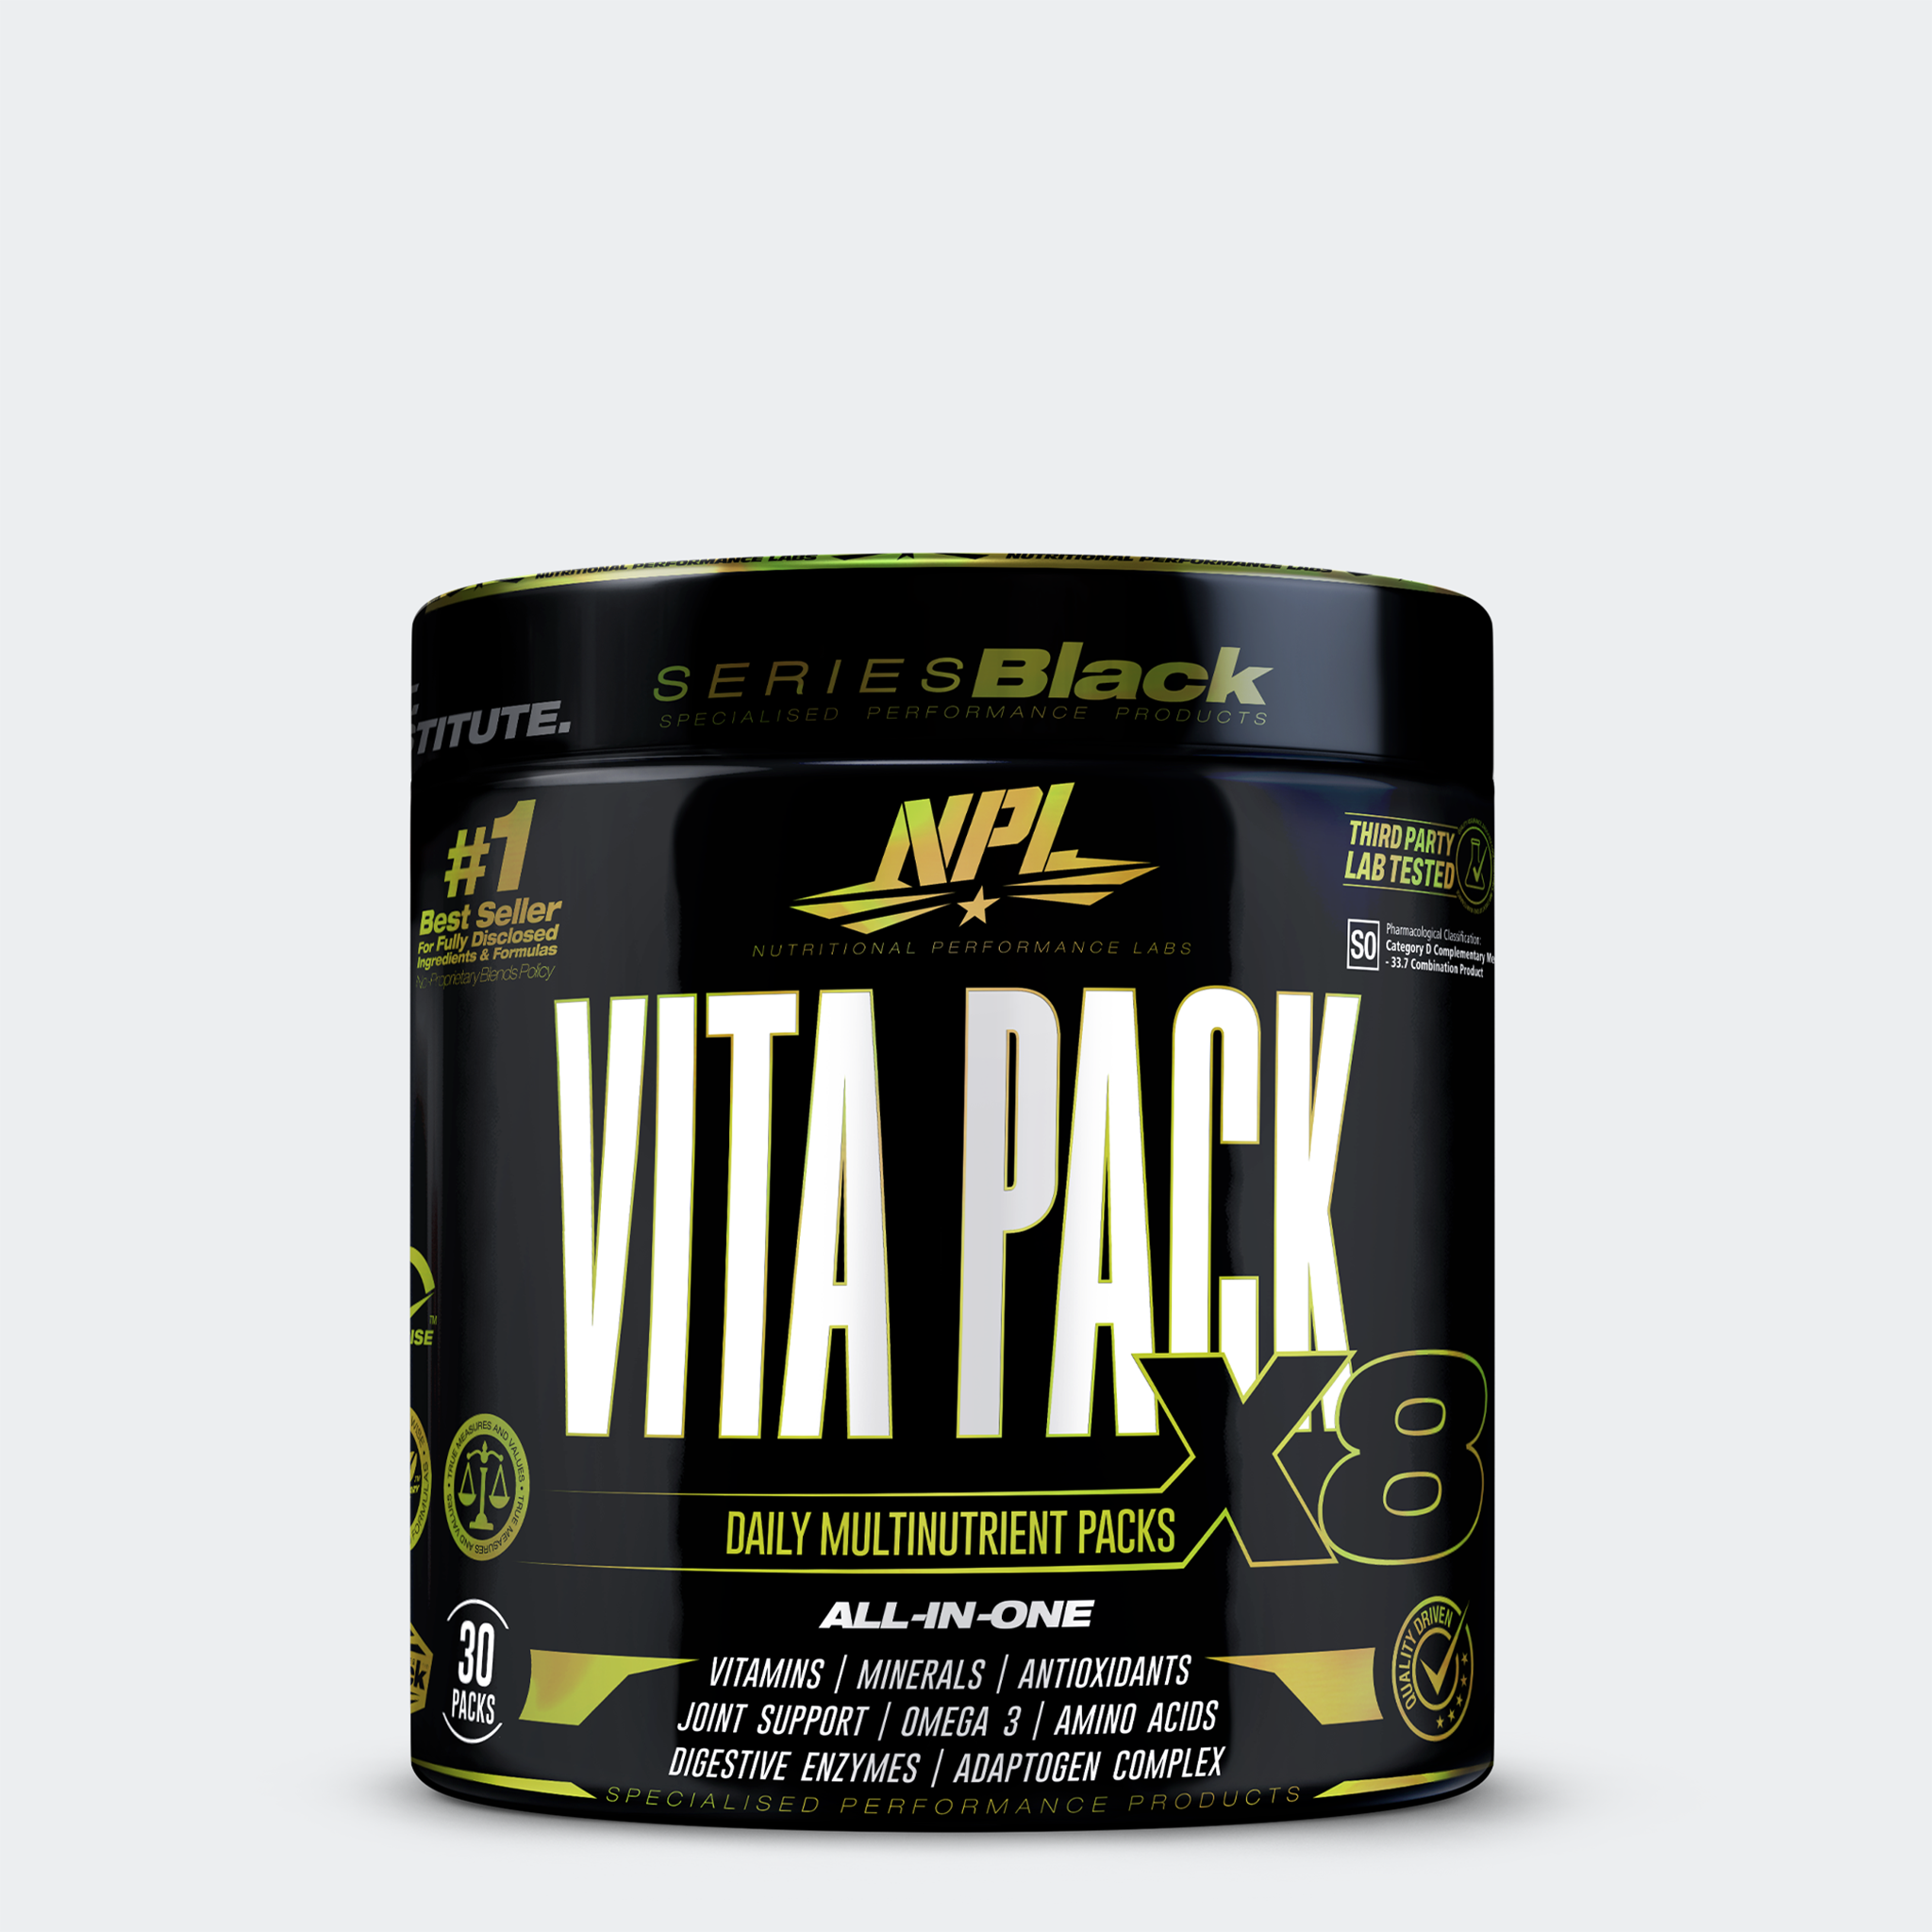 Vita Pack